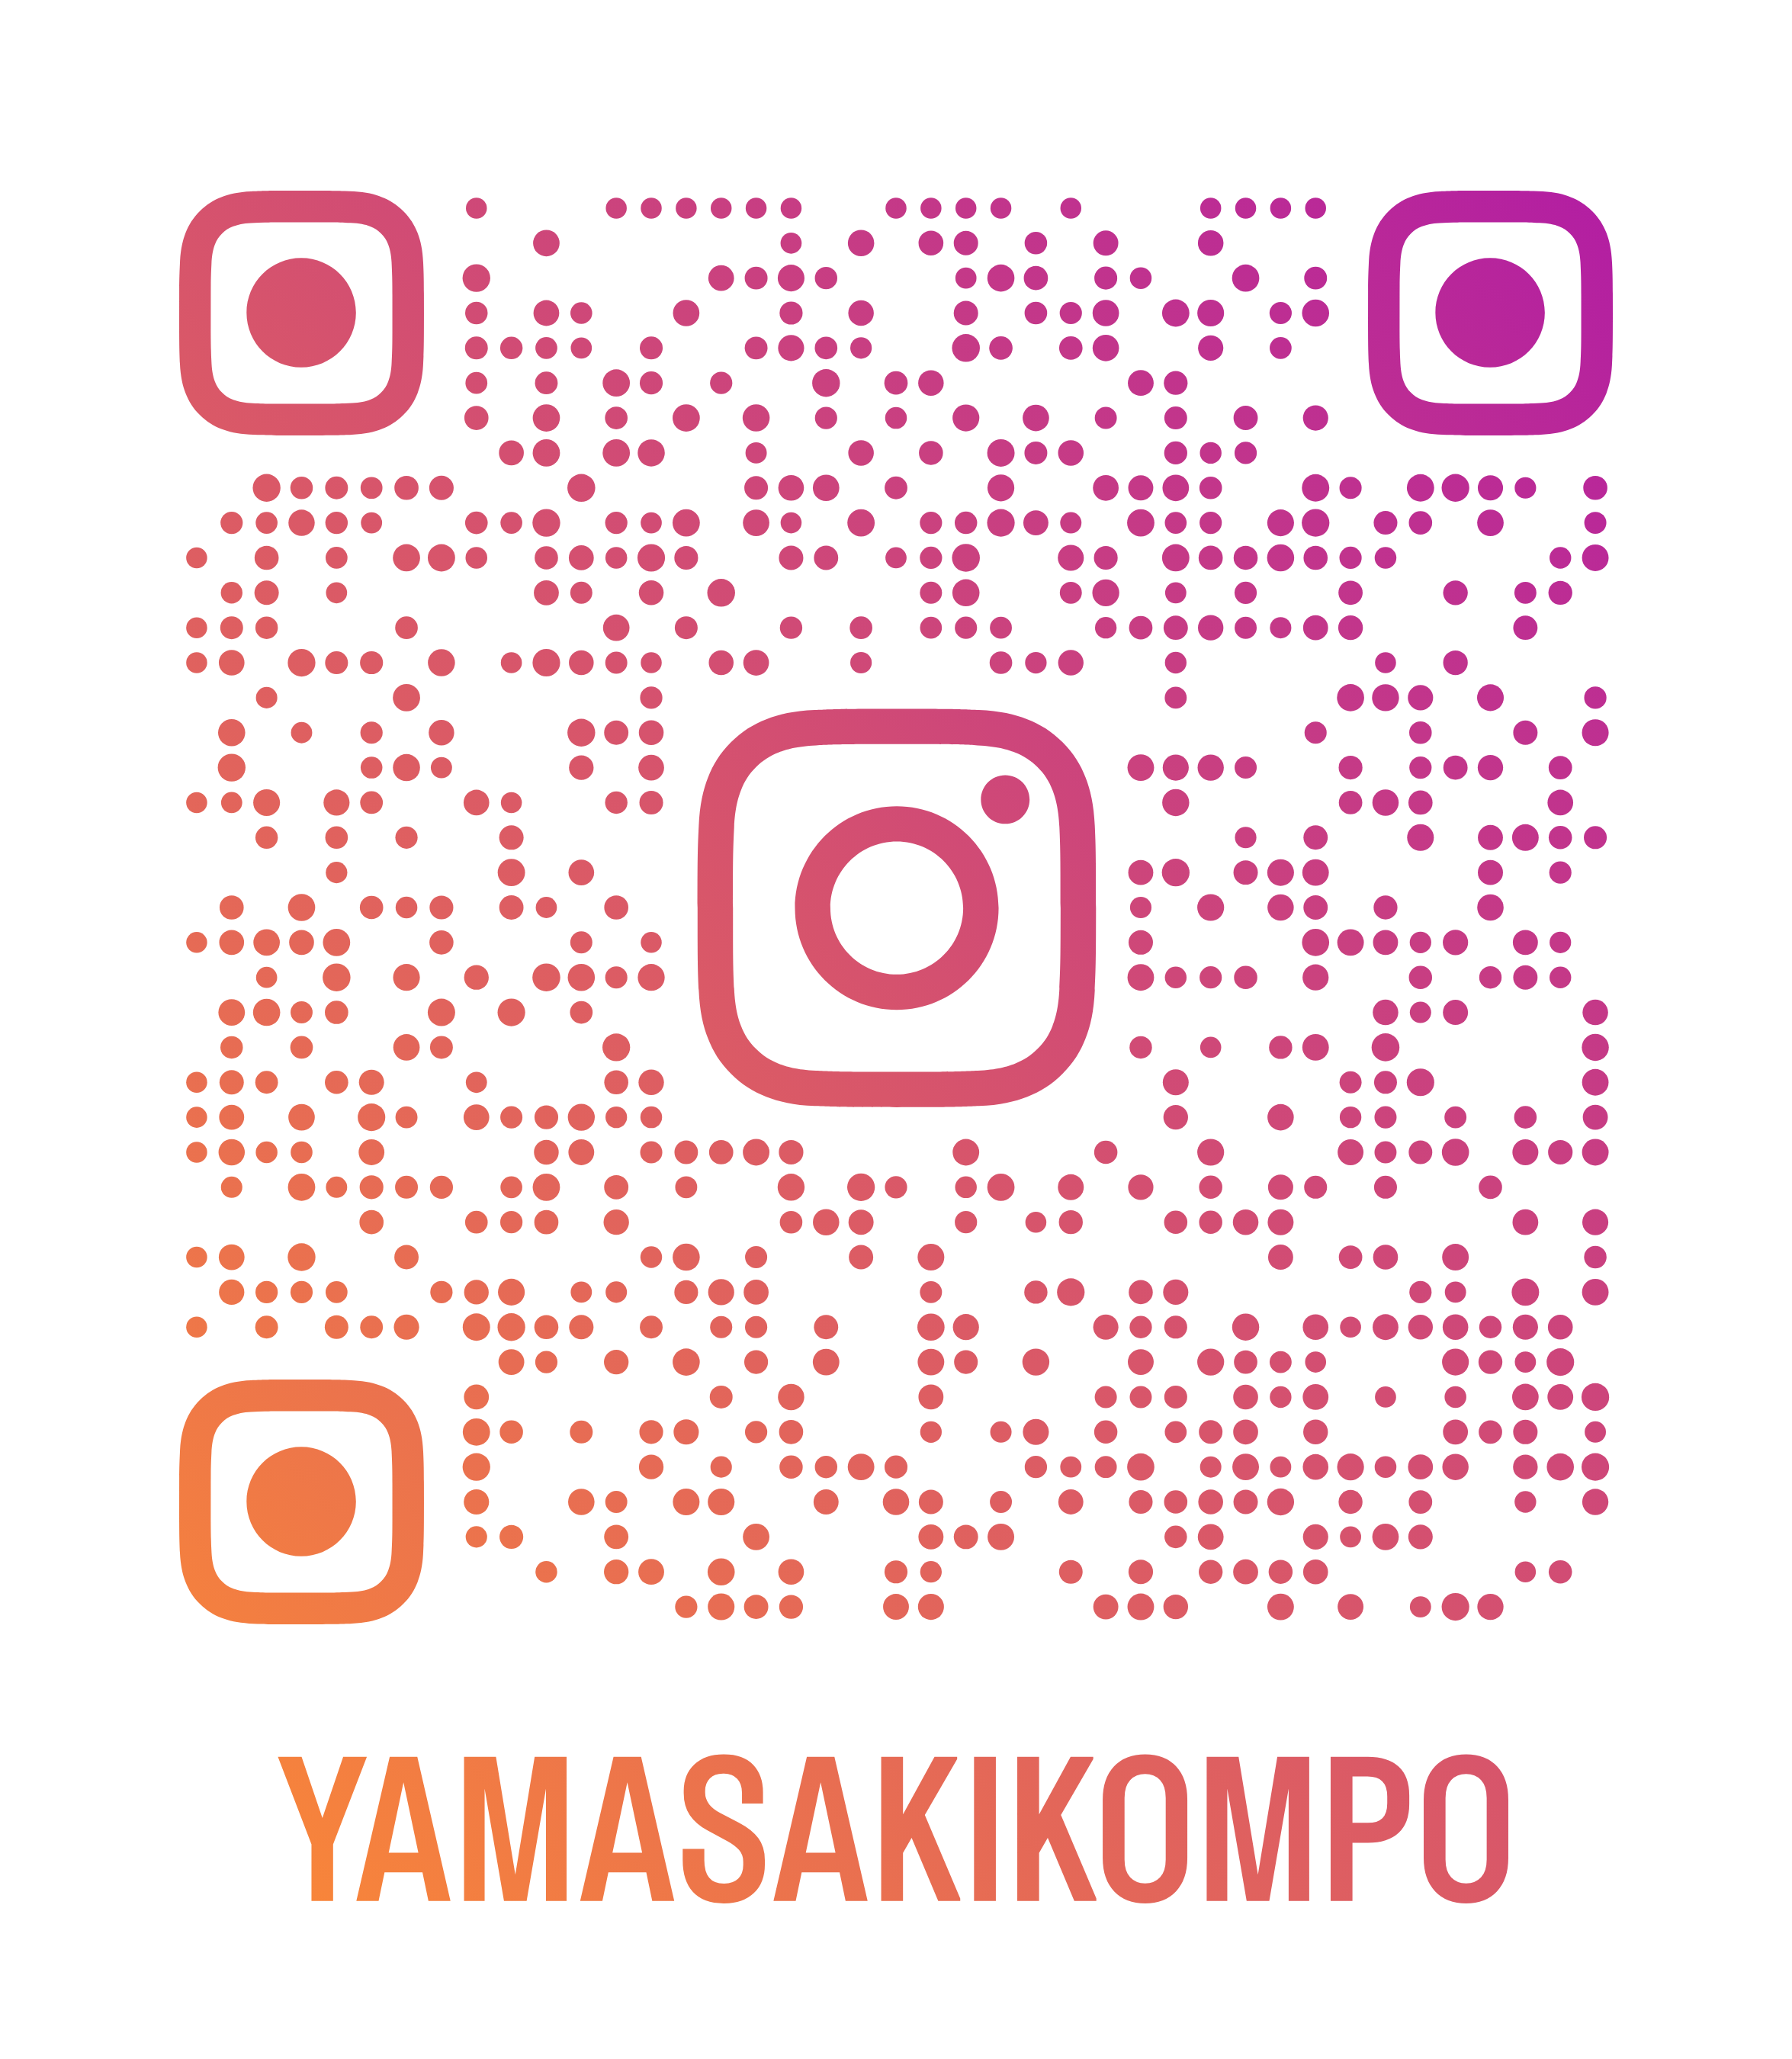 山崎梱包のinstagramのご紹介です。